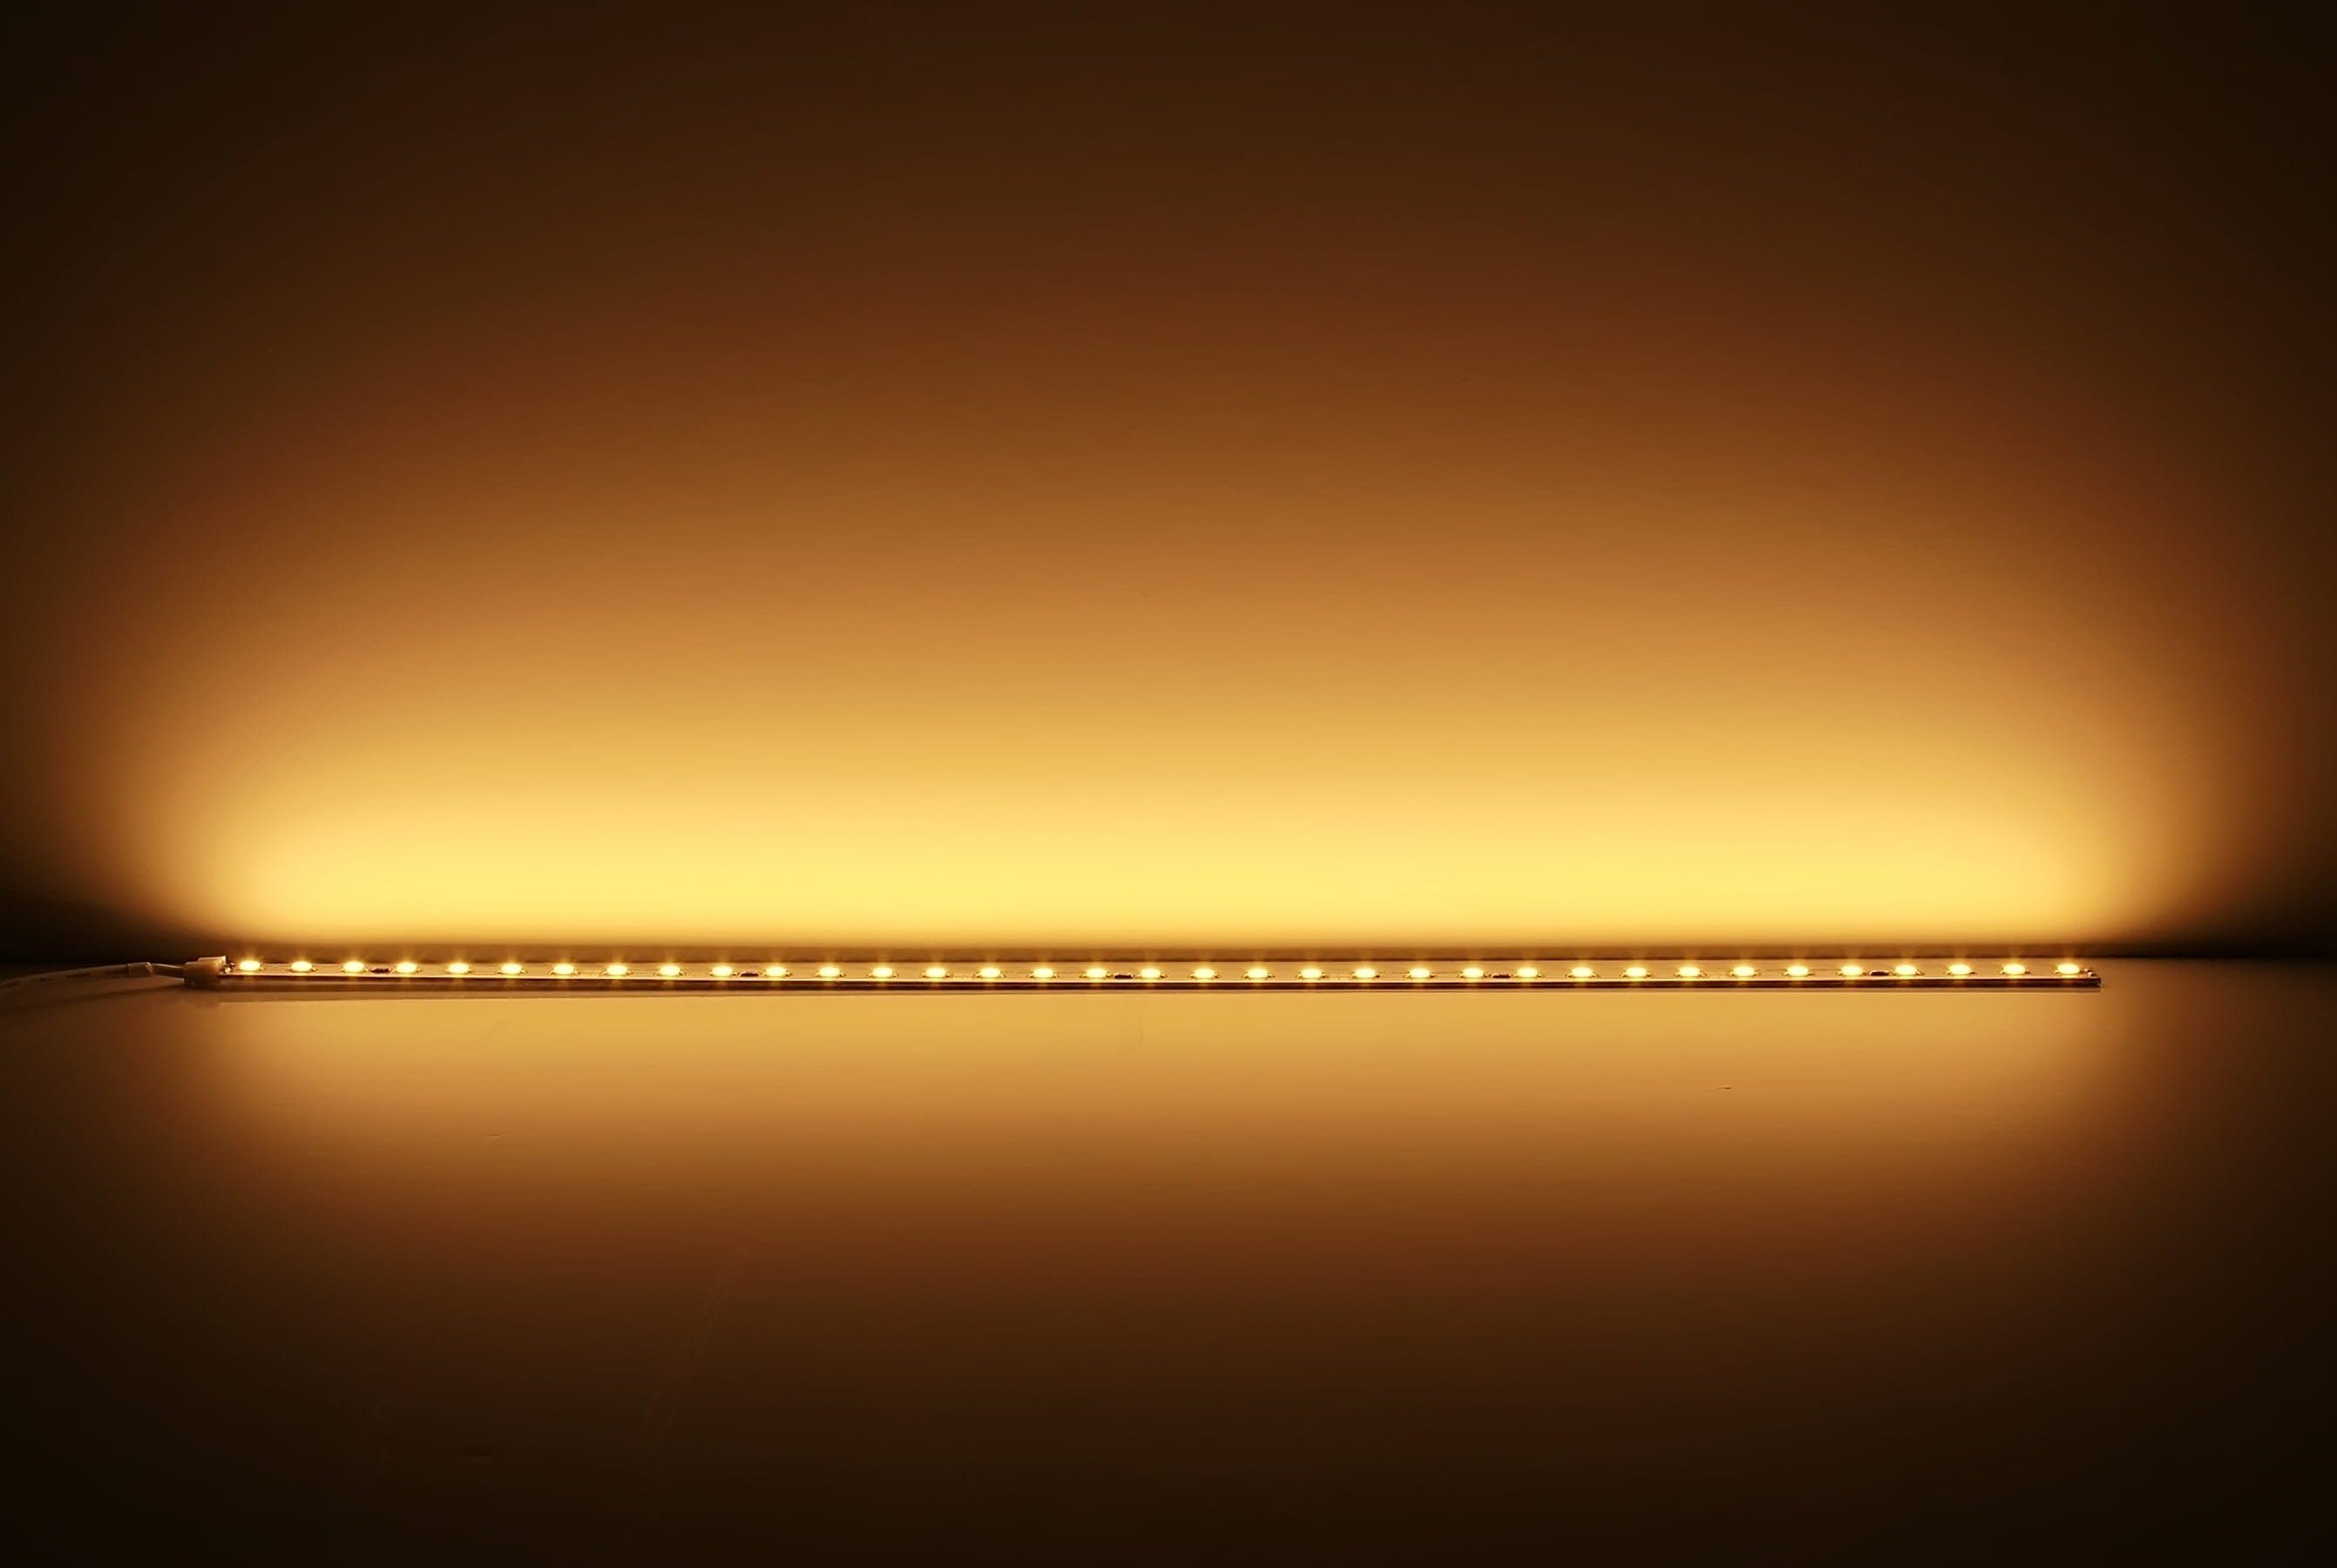 50cm LED warmweiß – Lichtleiste Platine Ogeled LED weiß 24V Modul